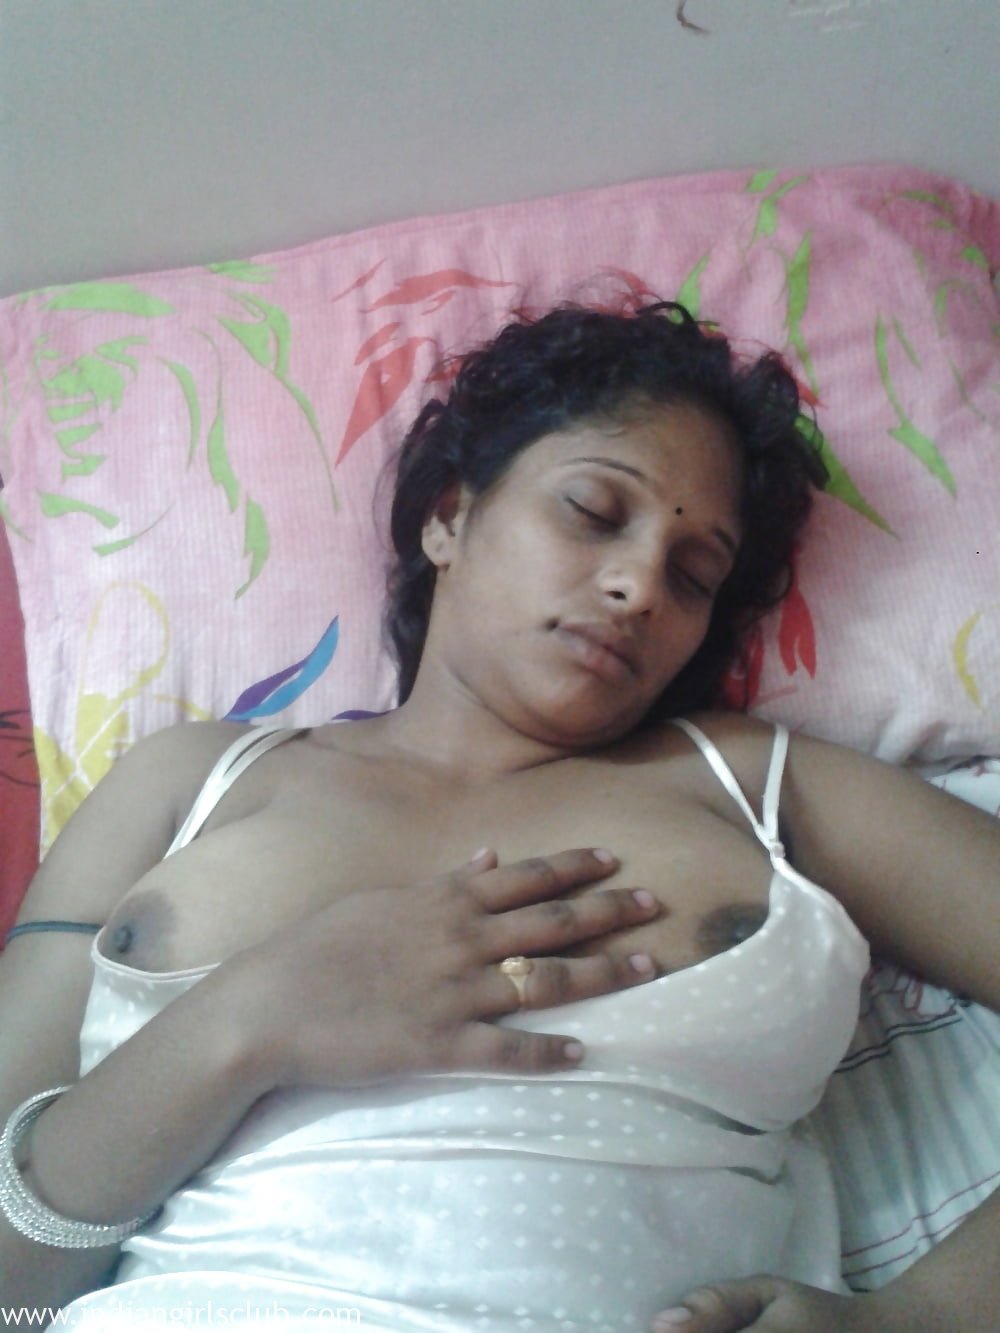 Sleeping Aunty Porn - Juicy Indian Aunty Sleeping Naked Big Boobs Exposed - Indian Girls Club